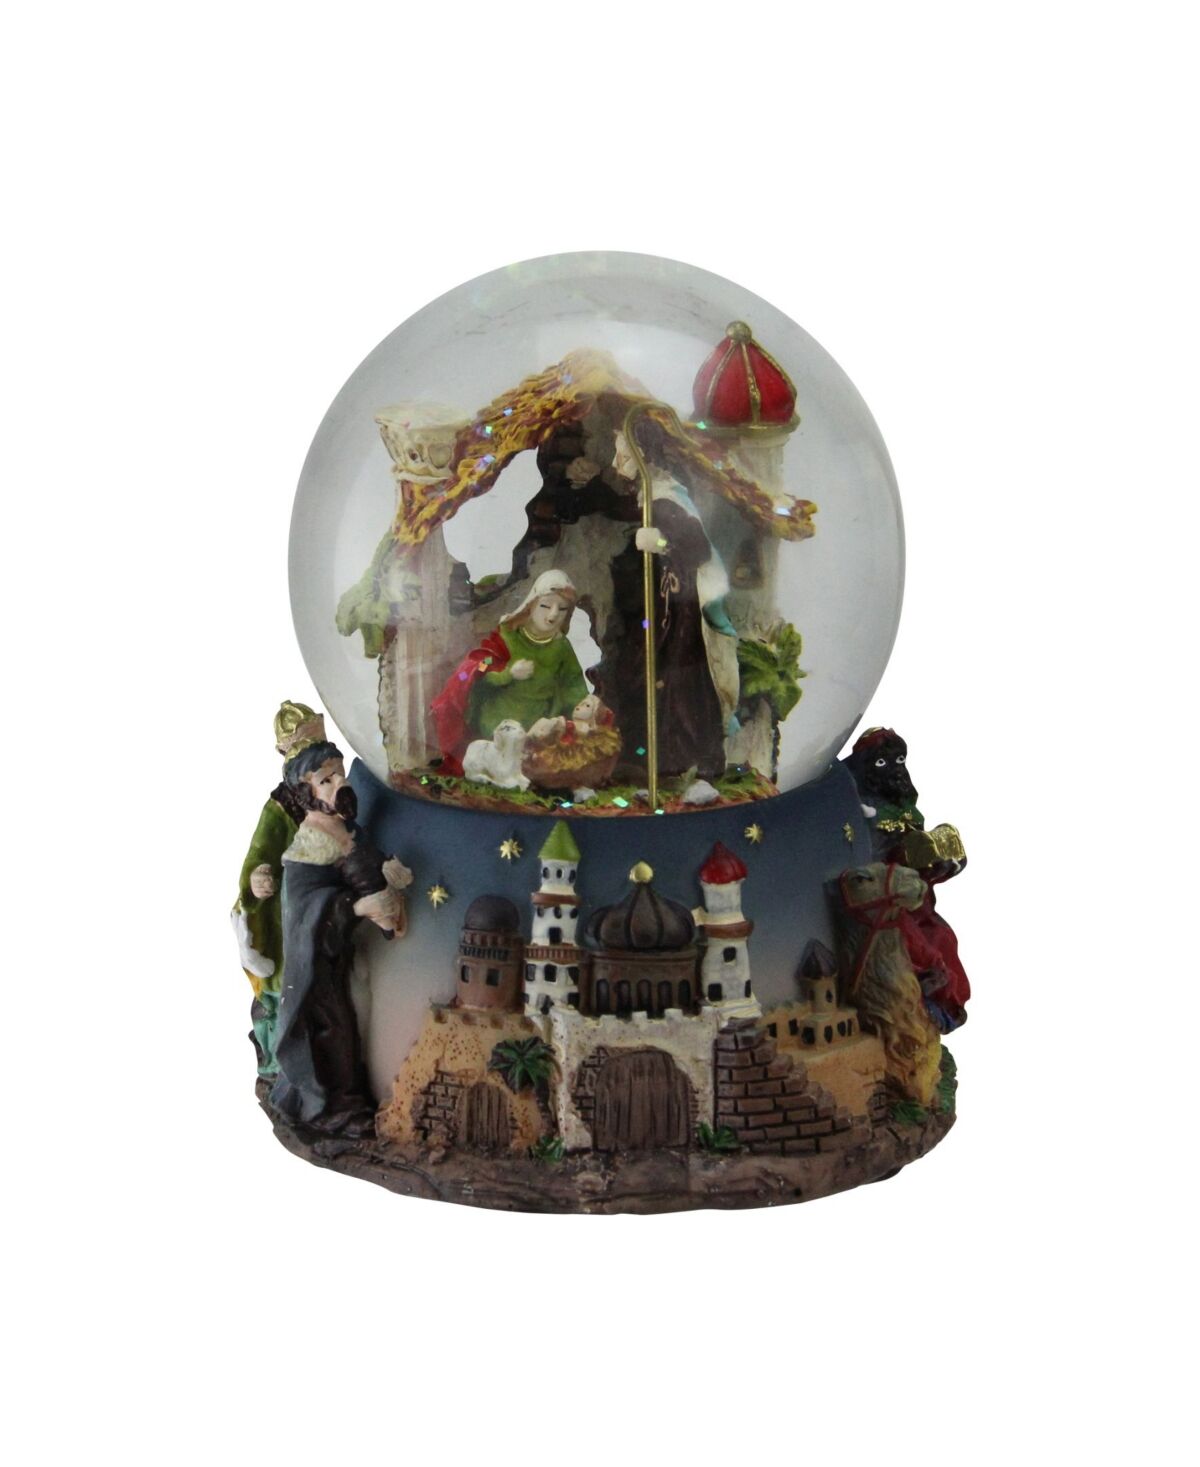 Northlight Nativity Manger Scene Religious Musical Christmas Snow Globe - Brown